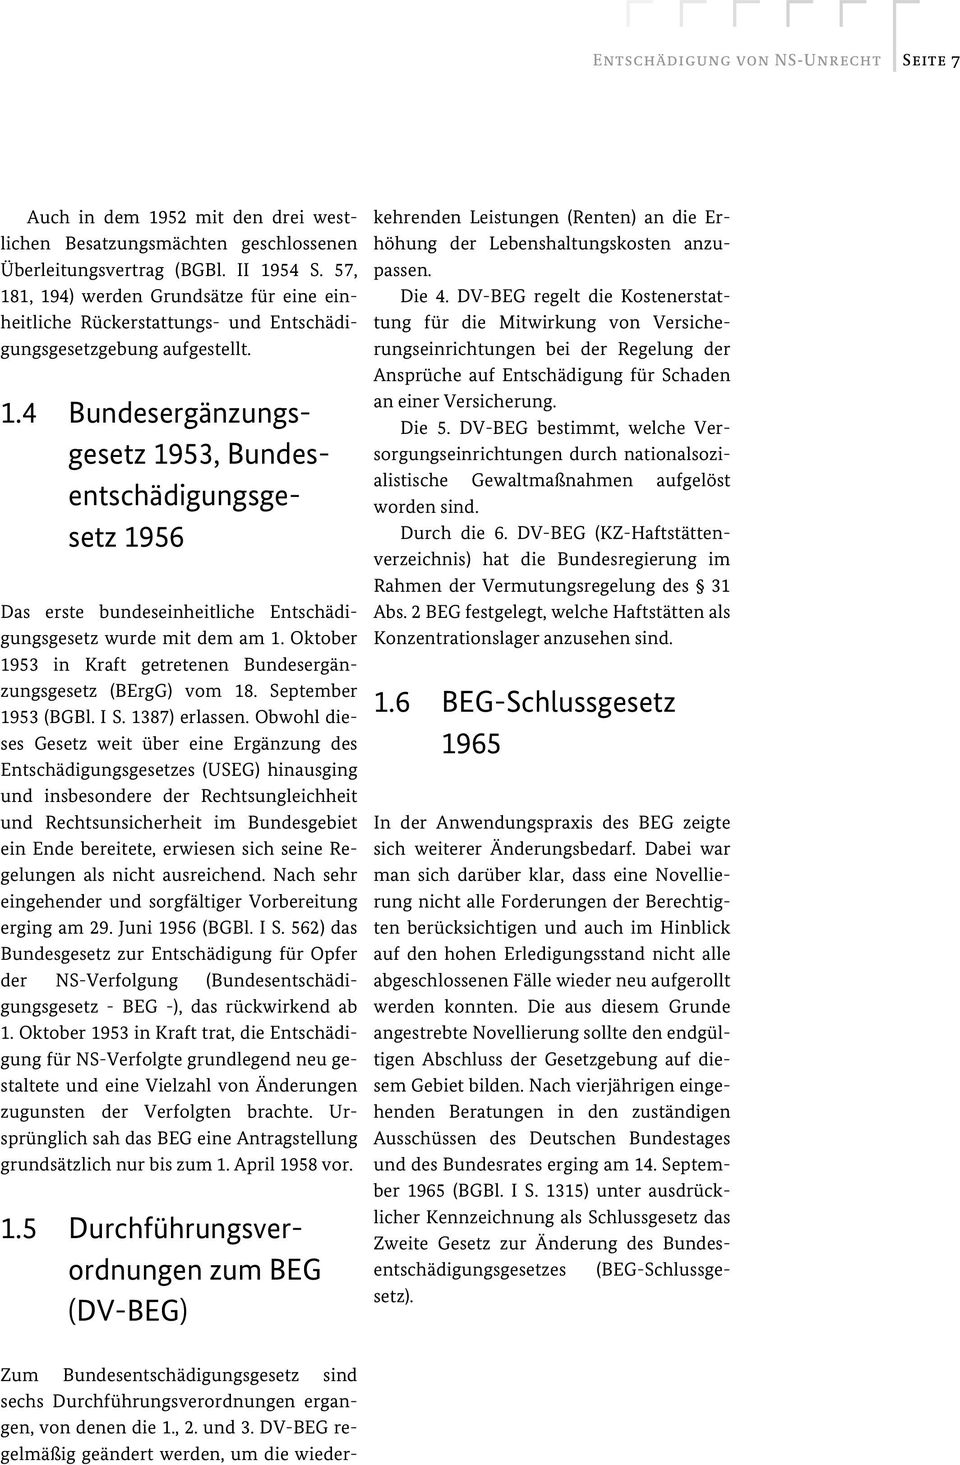 Oktober 1953 in Kraft getretenen Bundesergänzungsgesetz (BErgG) vom 18. September 1953 (BGBl. I S. 1387) erlassen.